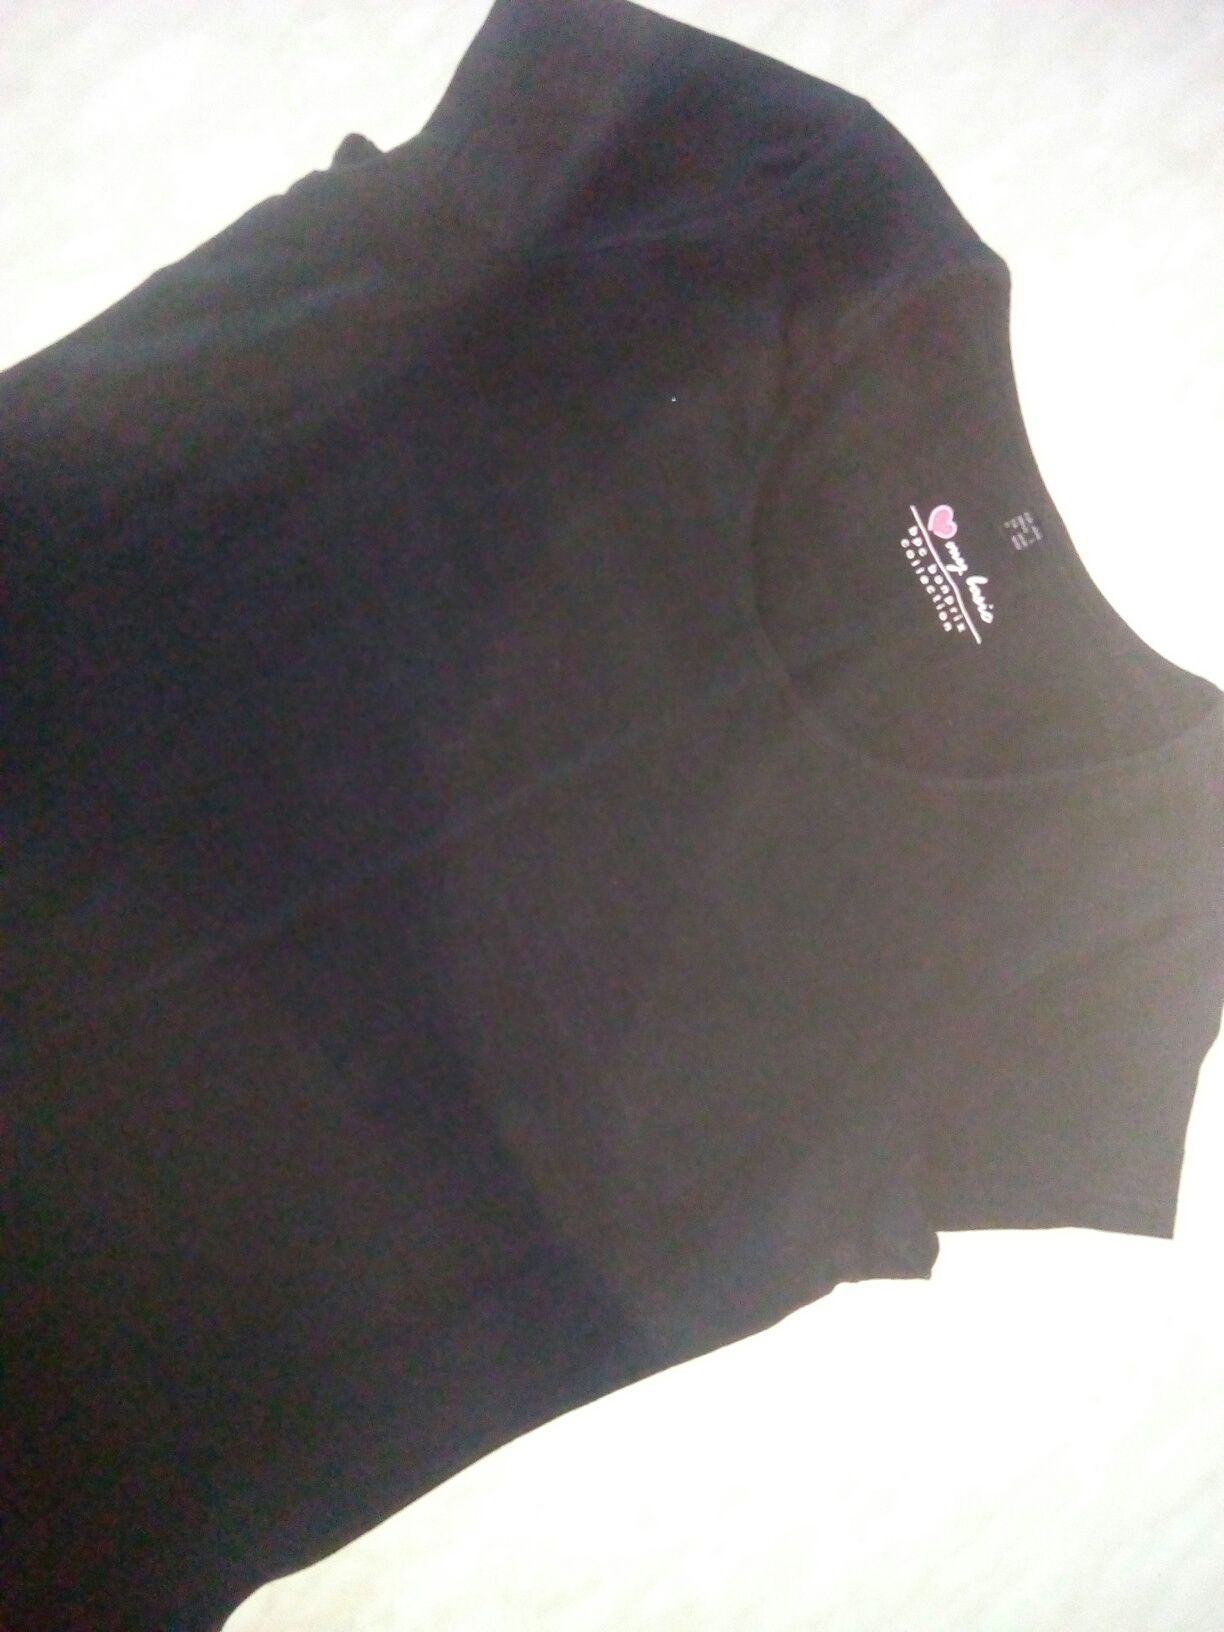 НОВАЯ! Женская,  черная футболка в спортивном стиле 52-54-56размер